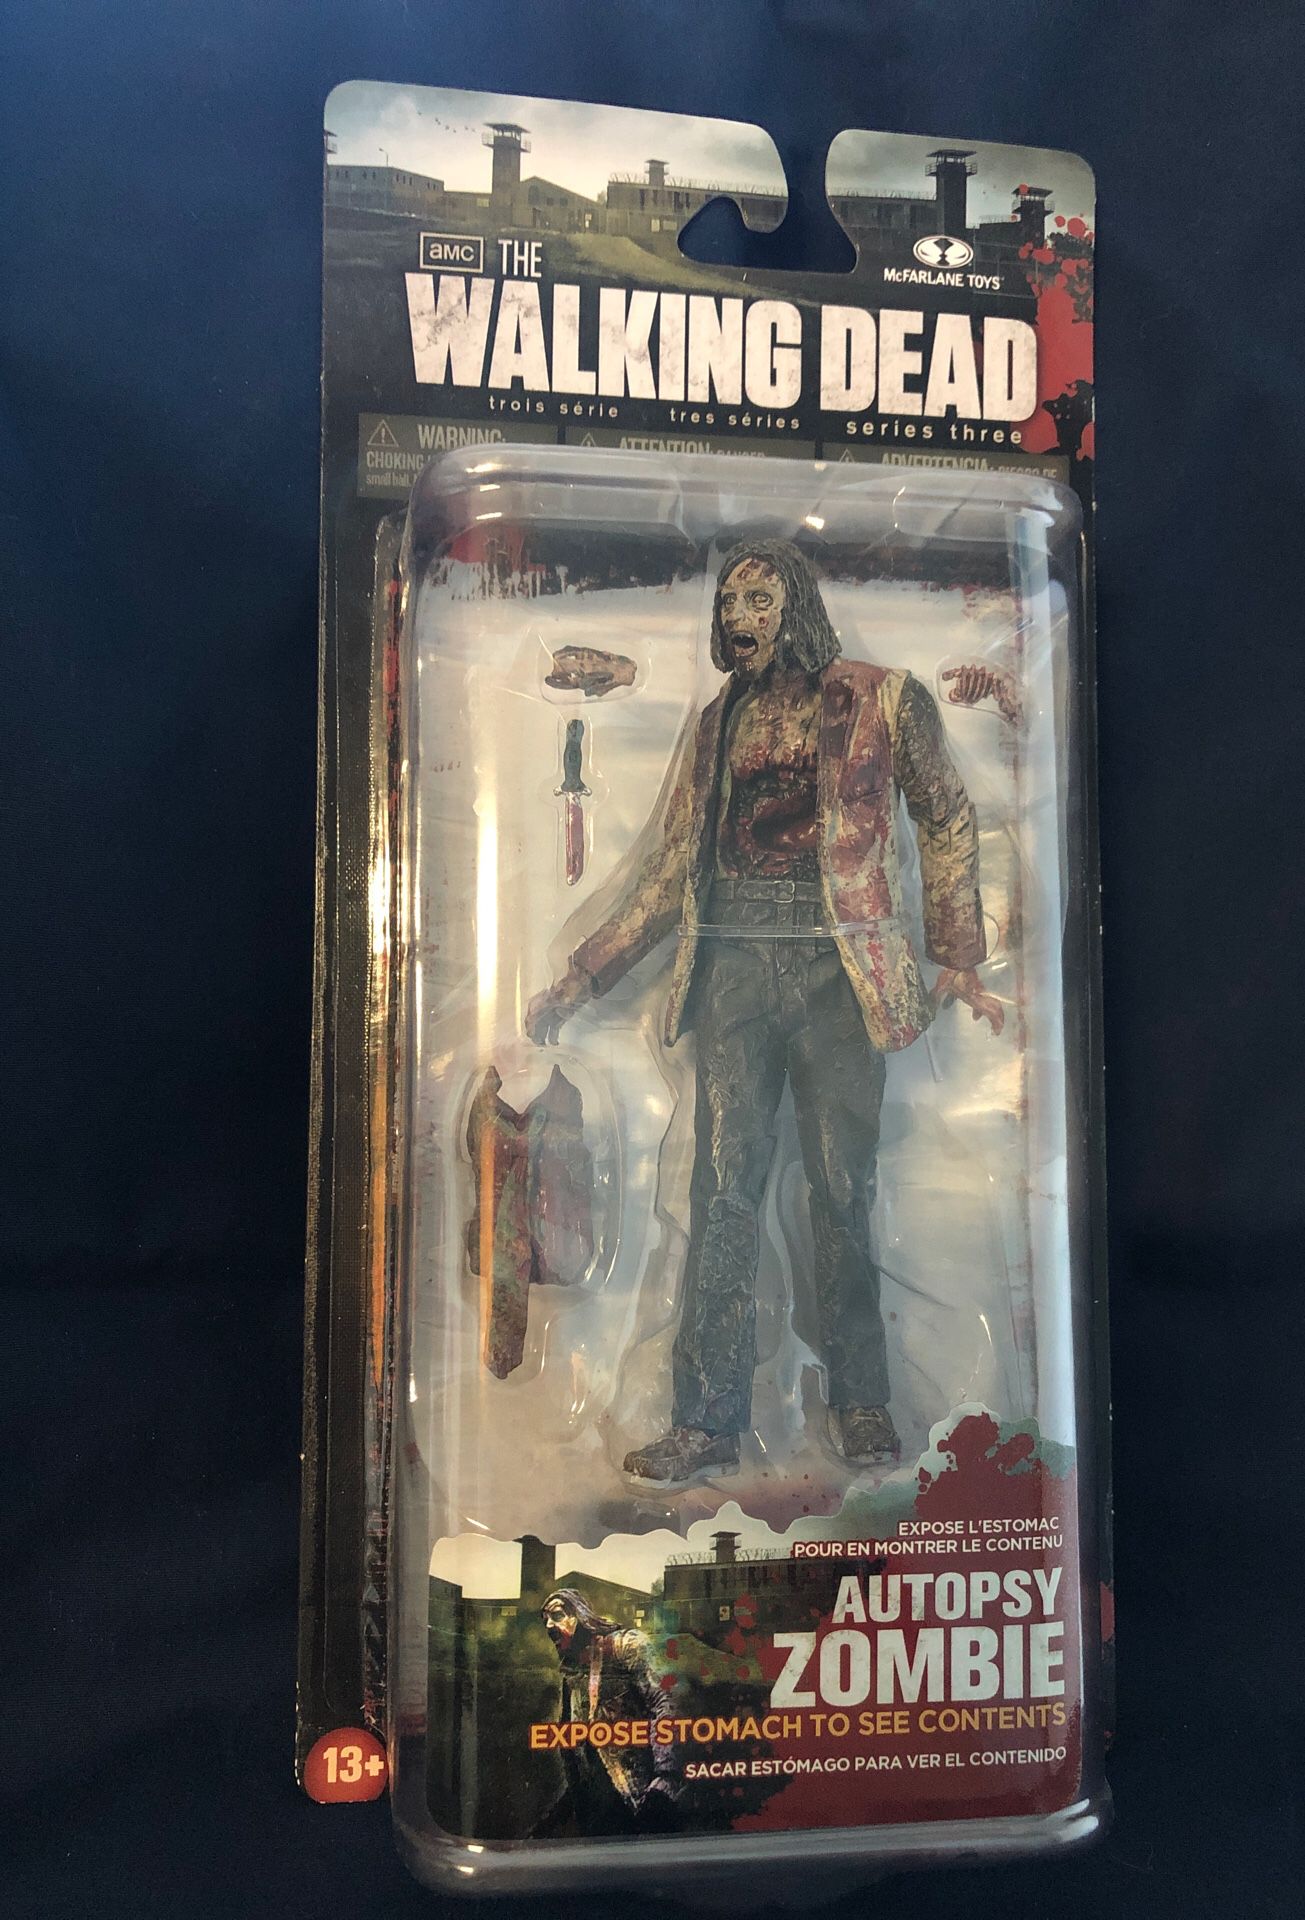 The Walking Dead-Series 3 Autopsy Zombie